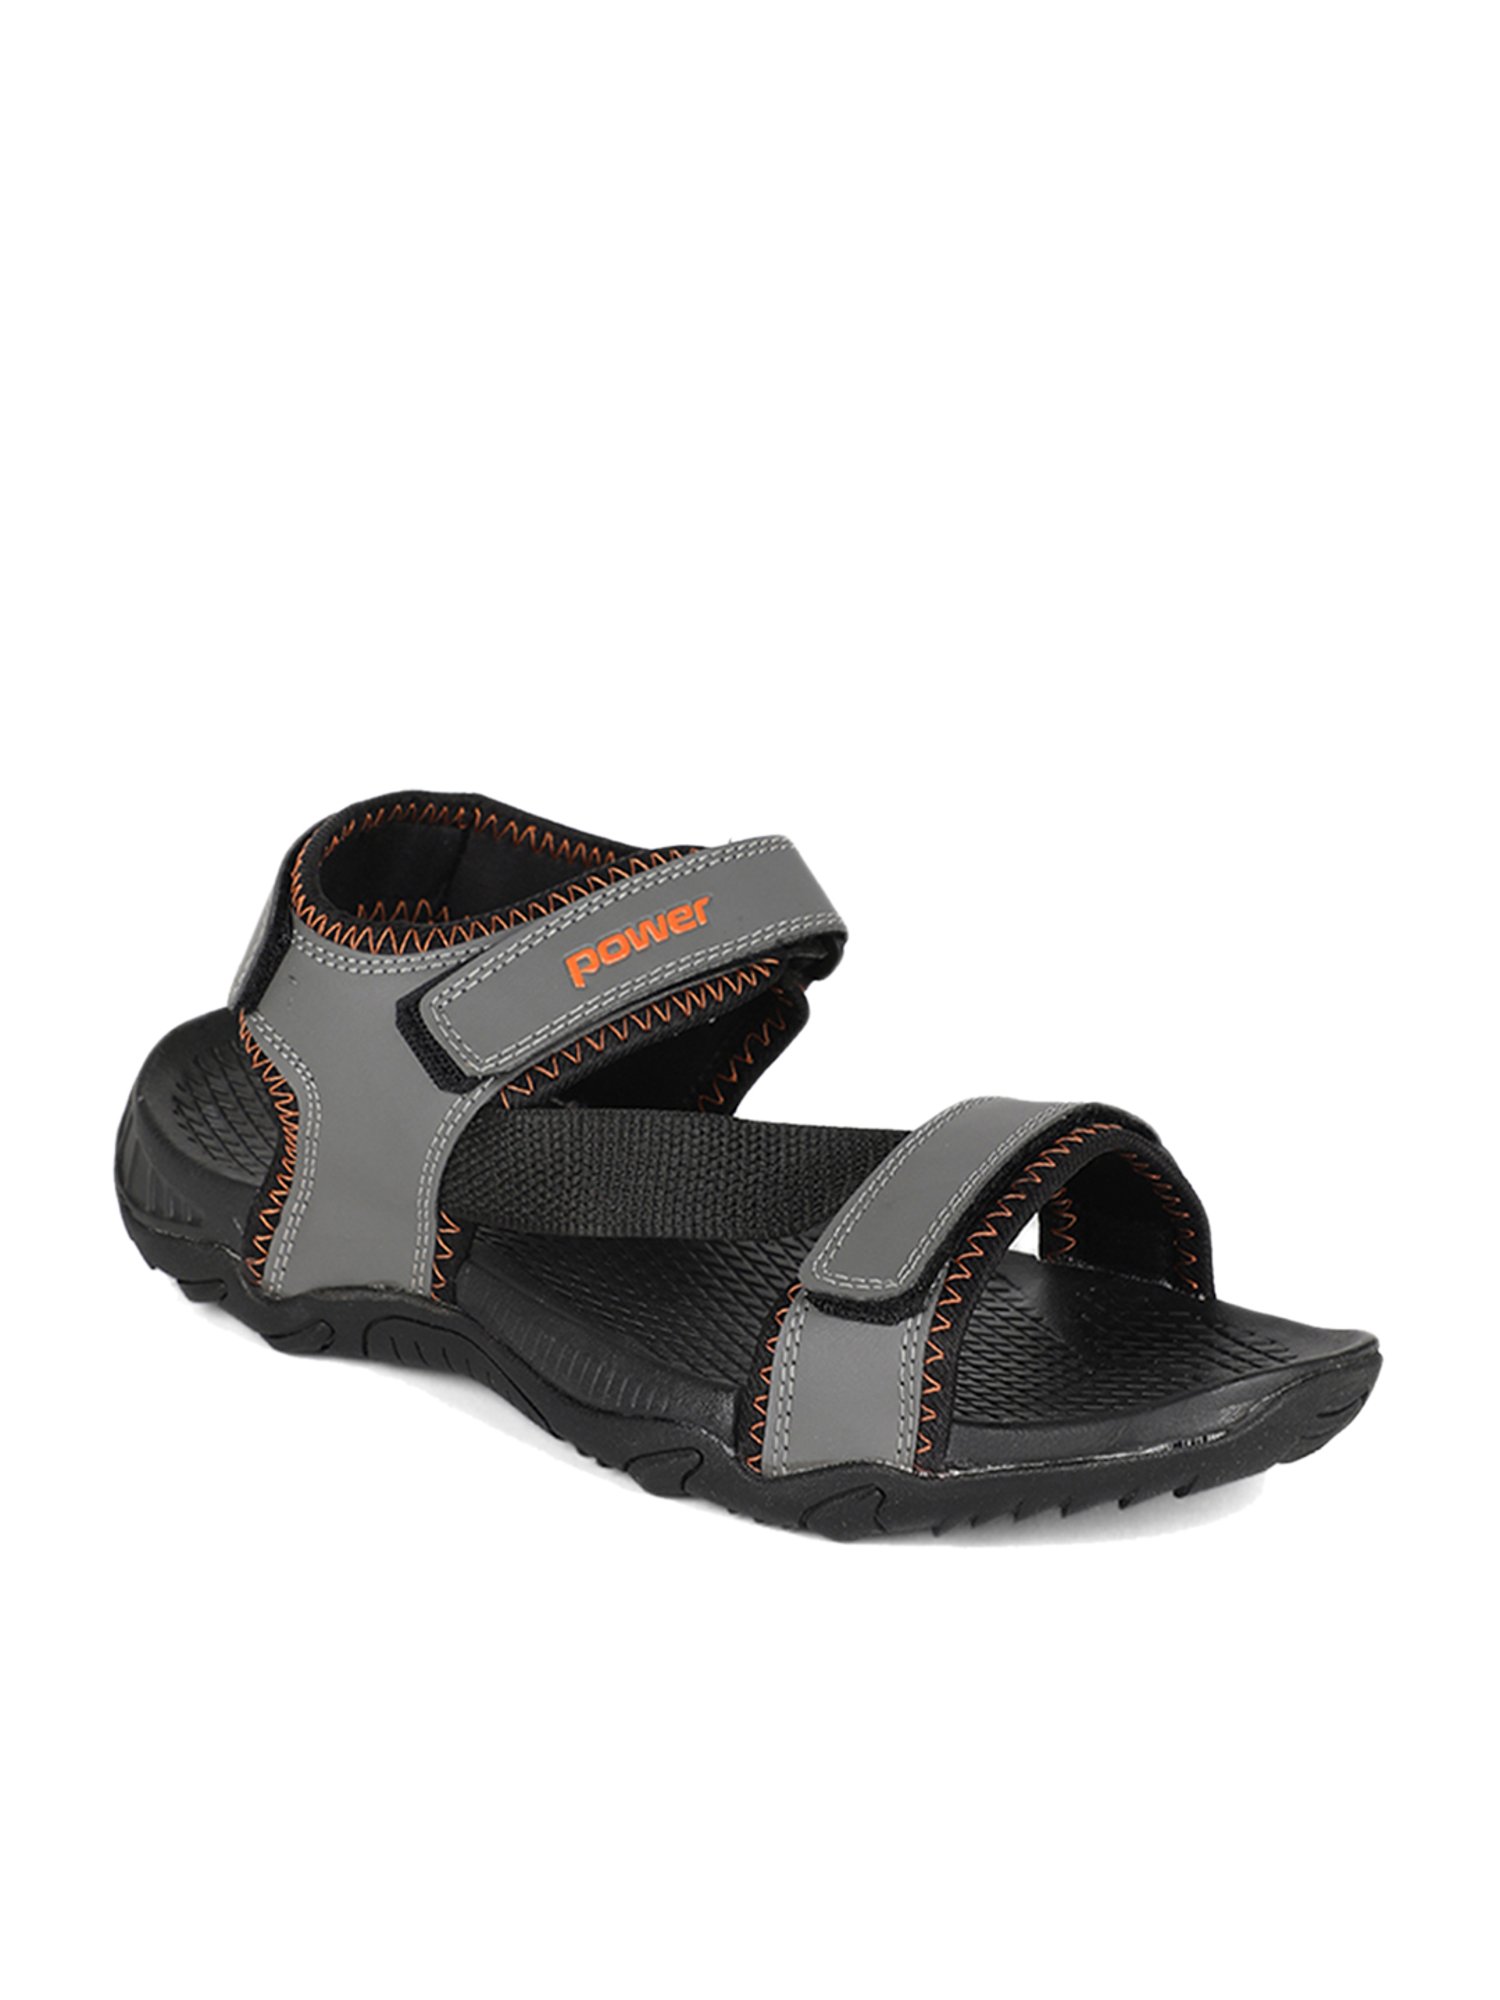 CAMPUS 2GC-06 Men Grey Sandals - Buy CAMPUS 2GC-06 Men Grey Sandals Online  at Best Price - Shop Online for Footwears in India | Flipkart.com